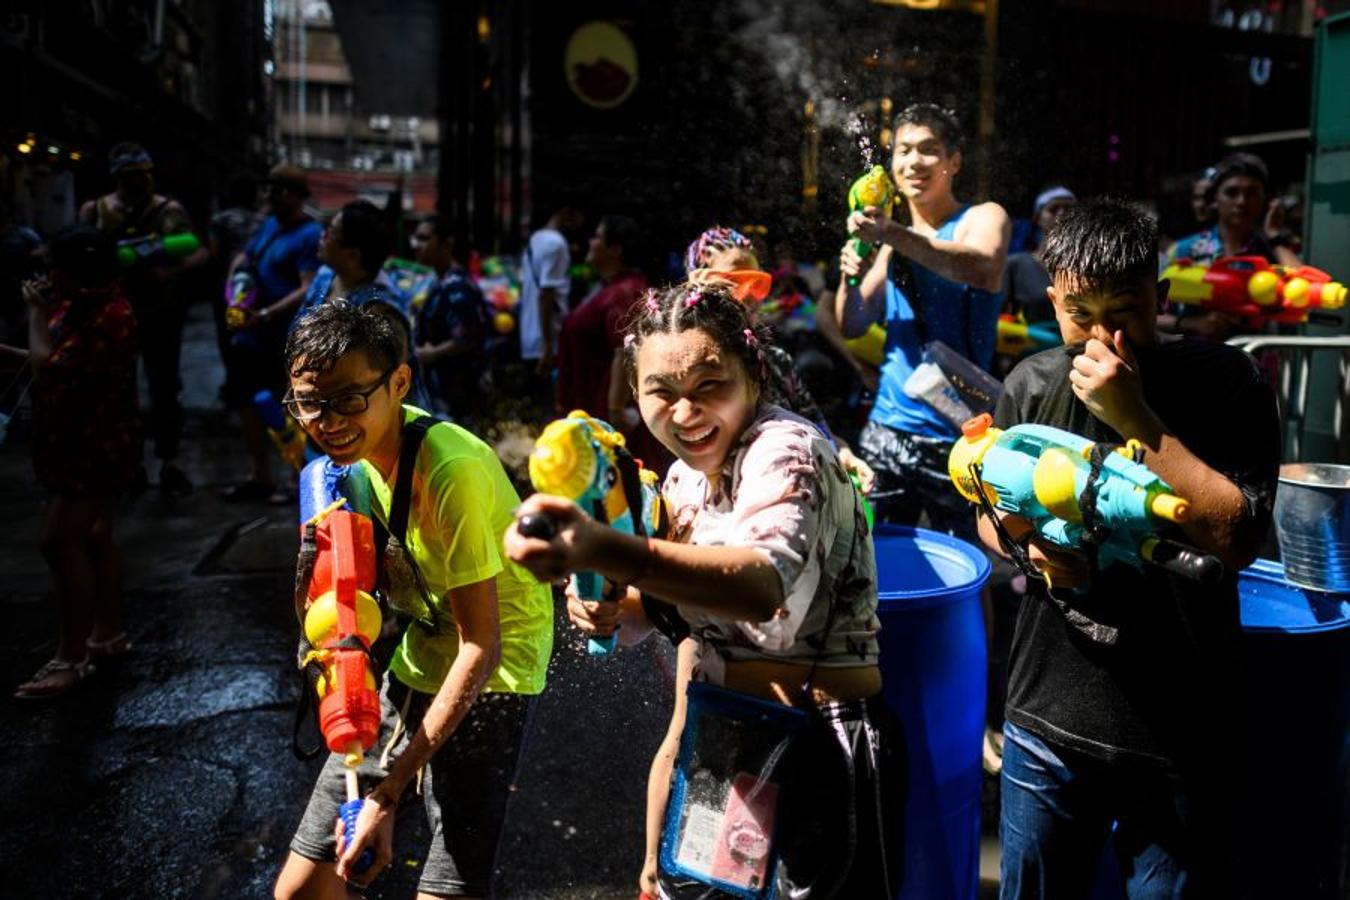 El Songkran o festival del agua, es una de las grandes festividades del budismo con la que se inicia el Año Nuevo tailandés.